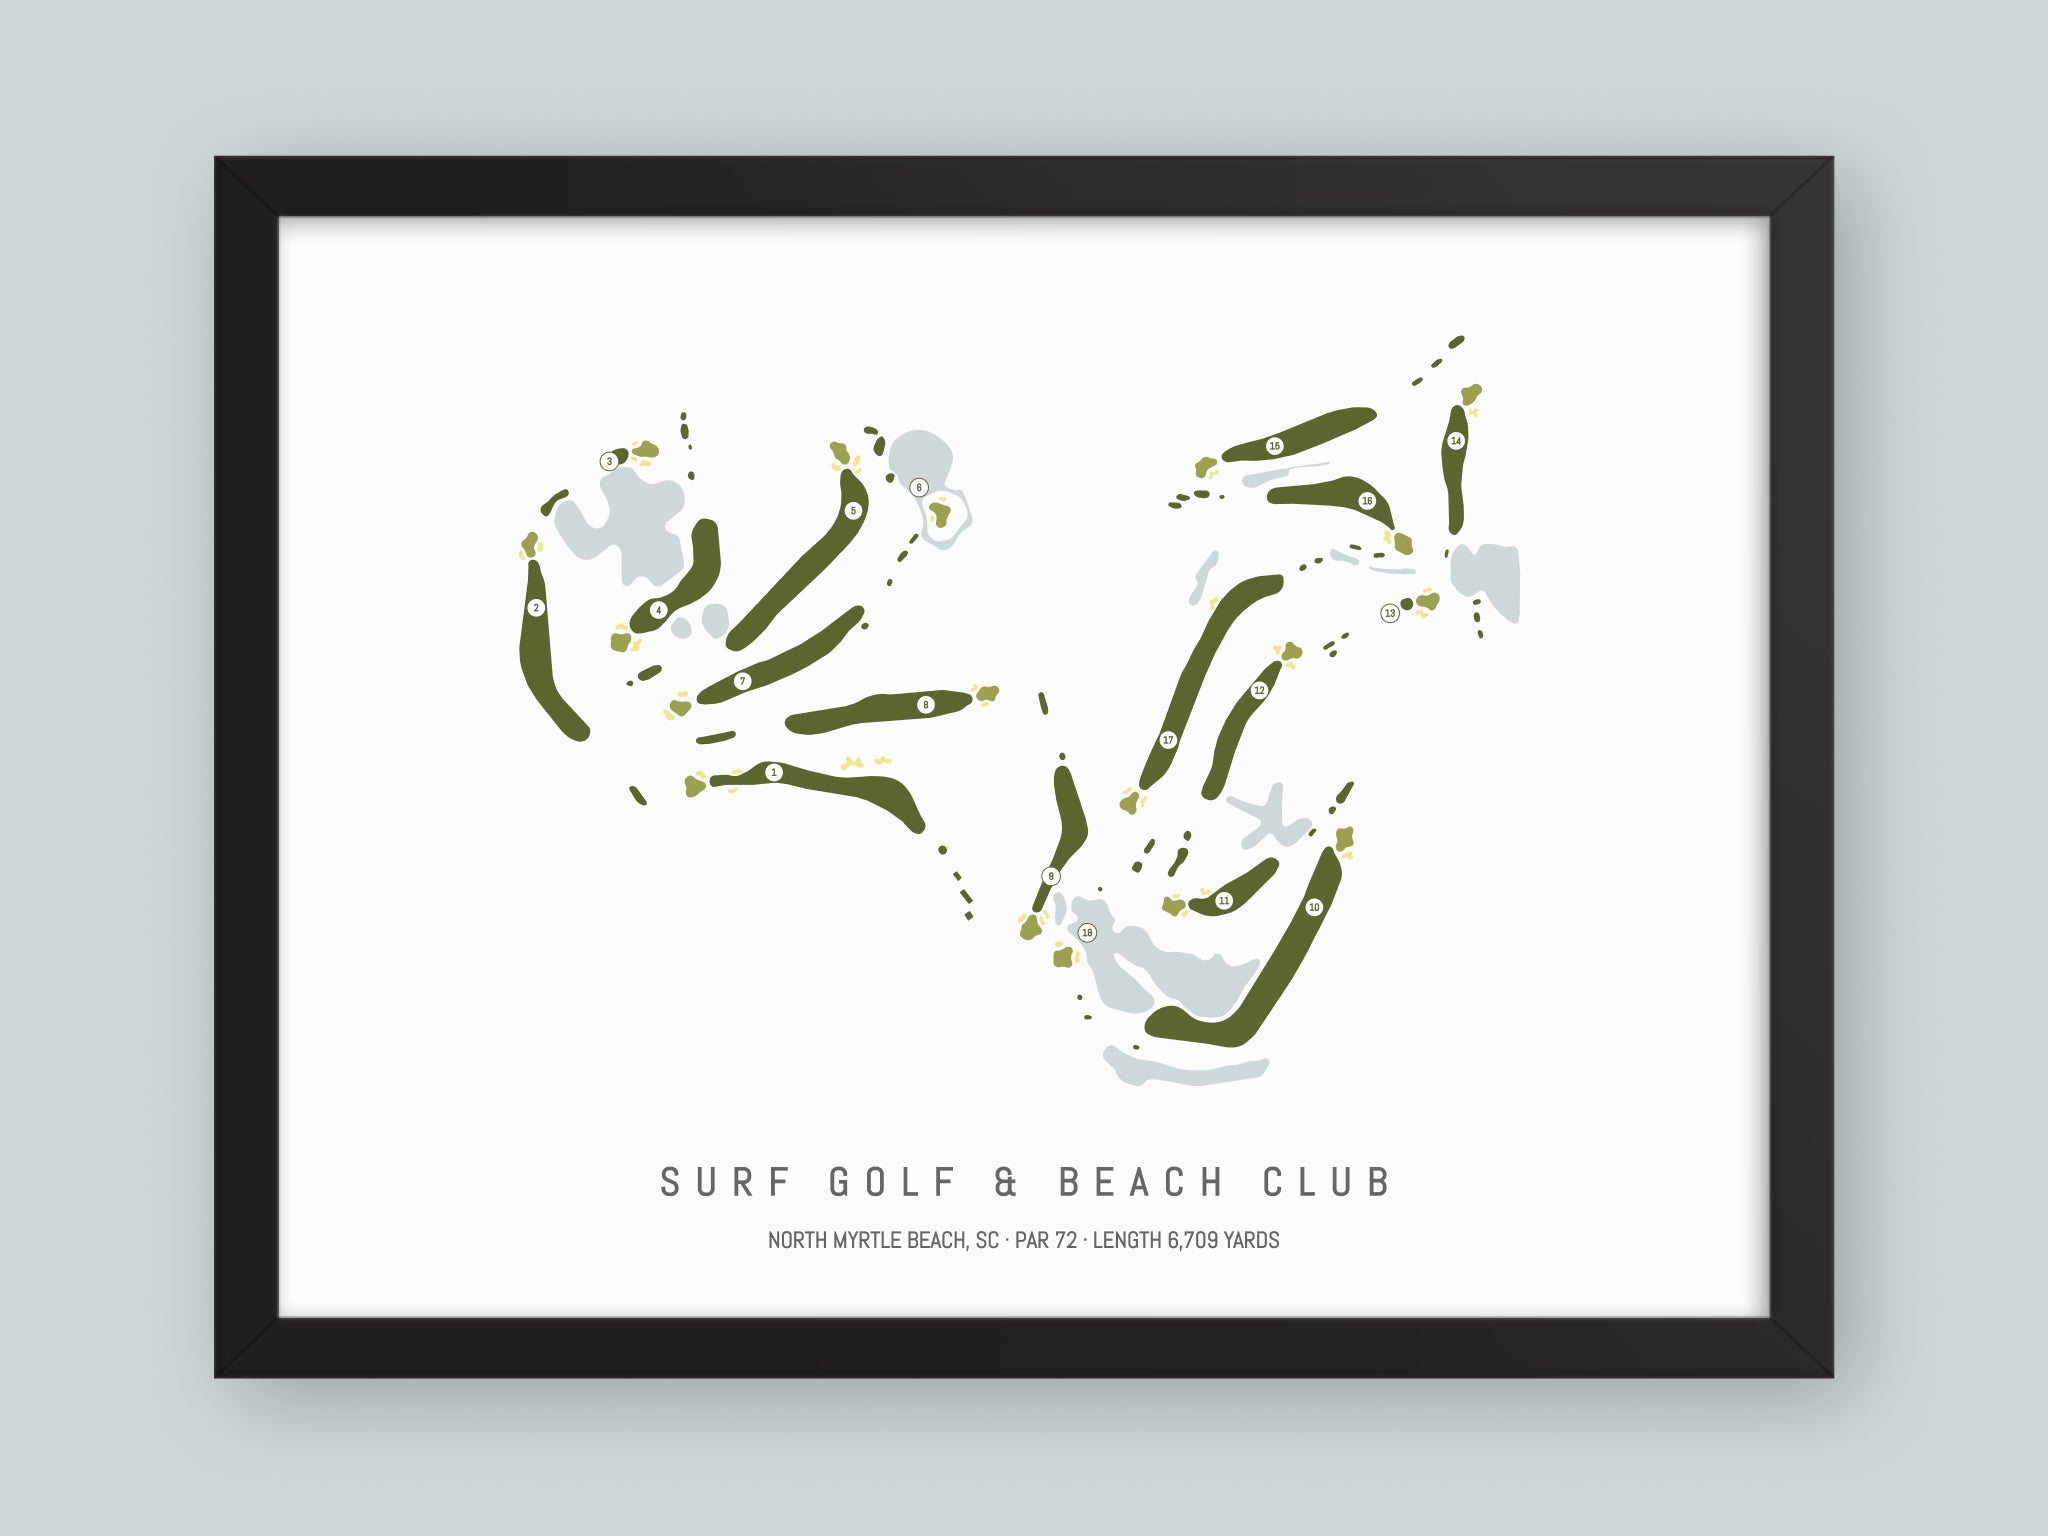 Surf Golf & Beach Club